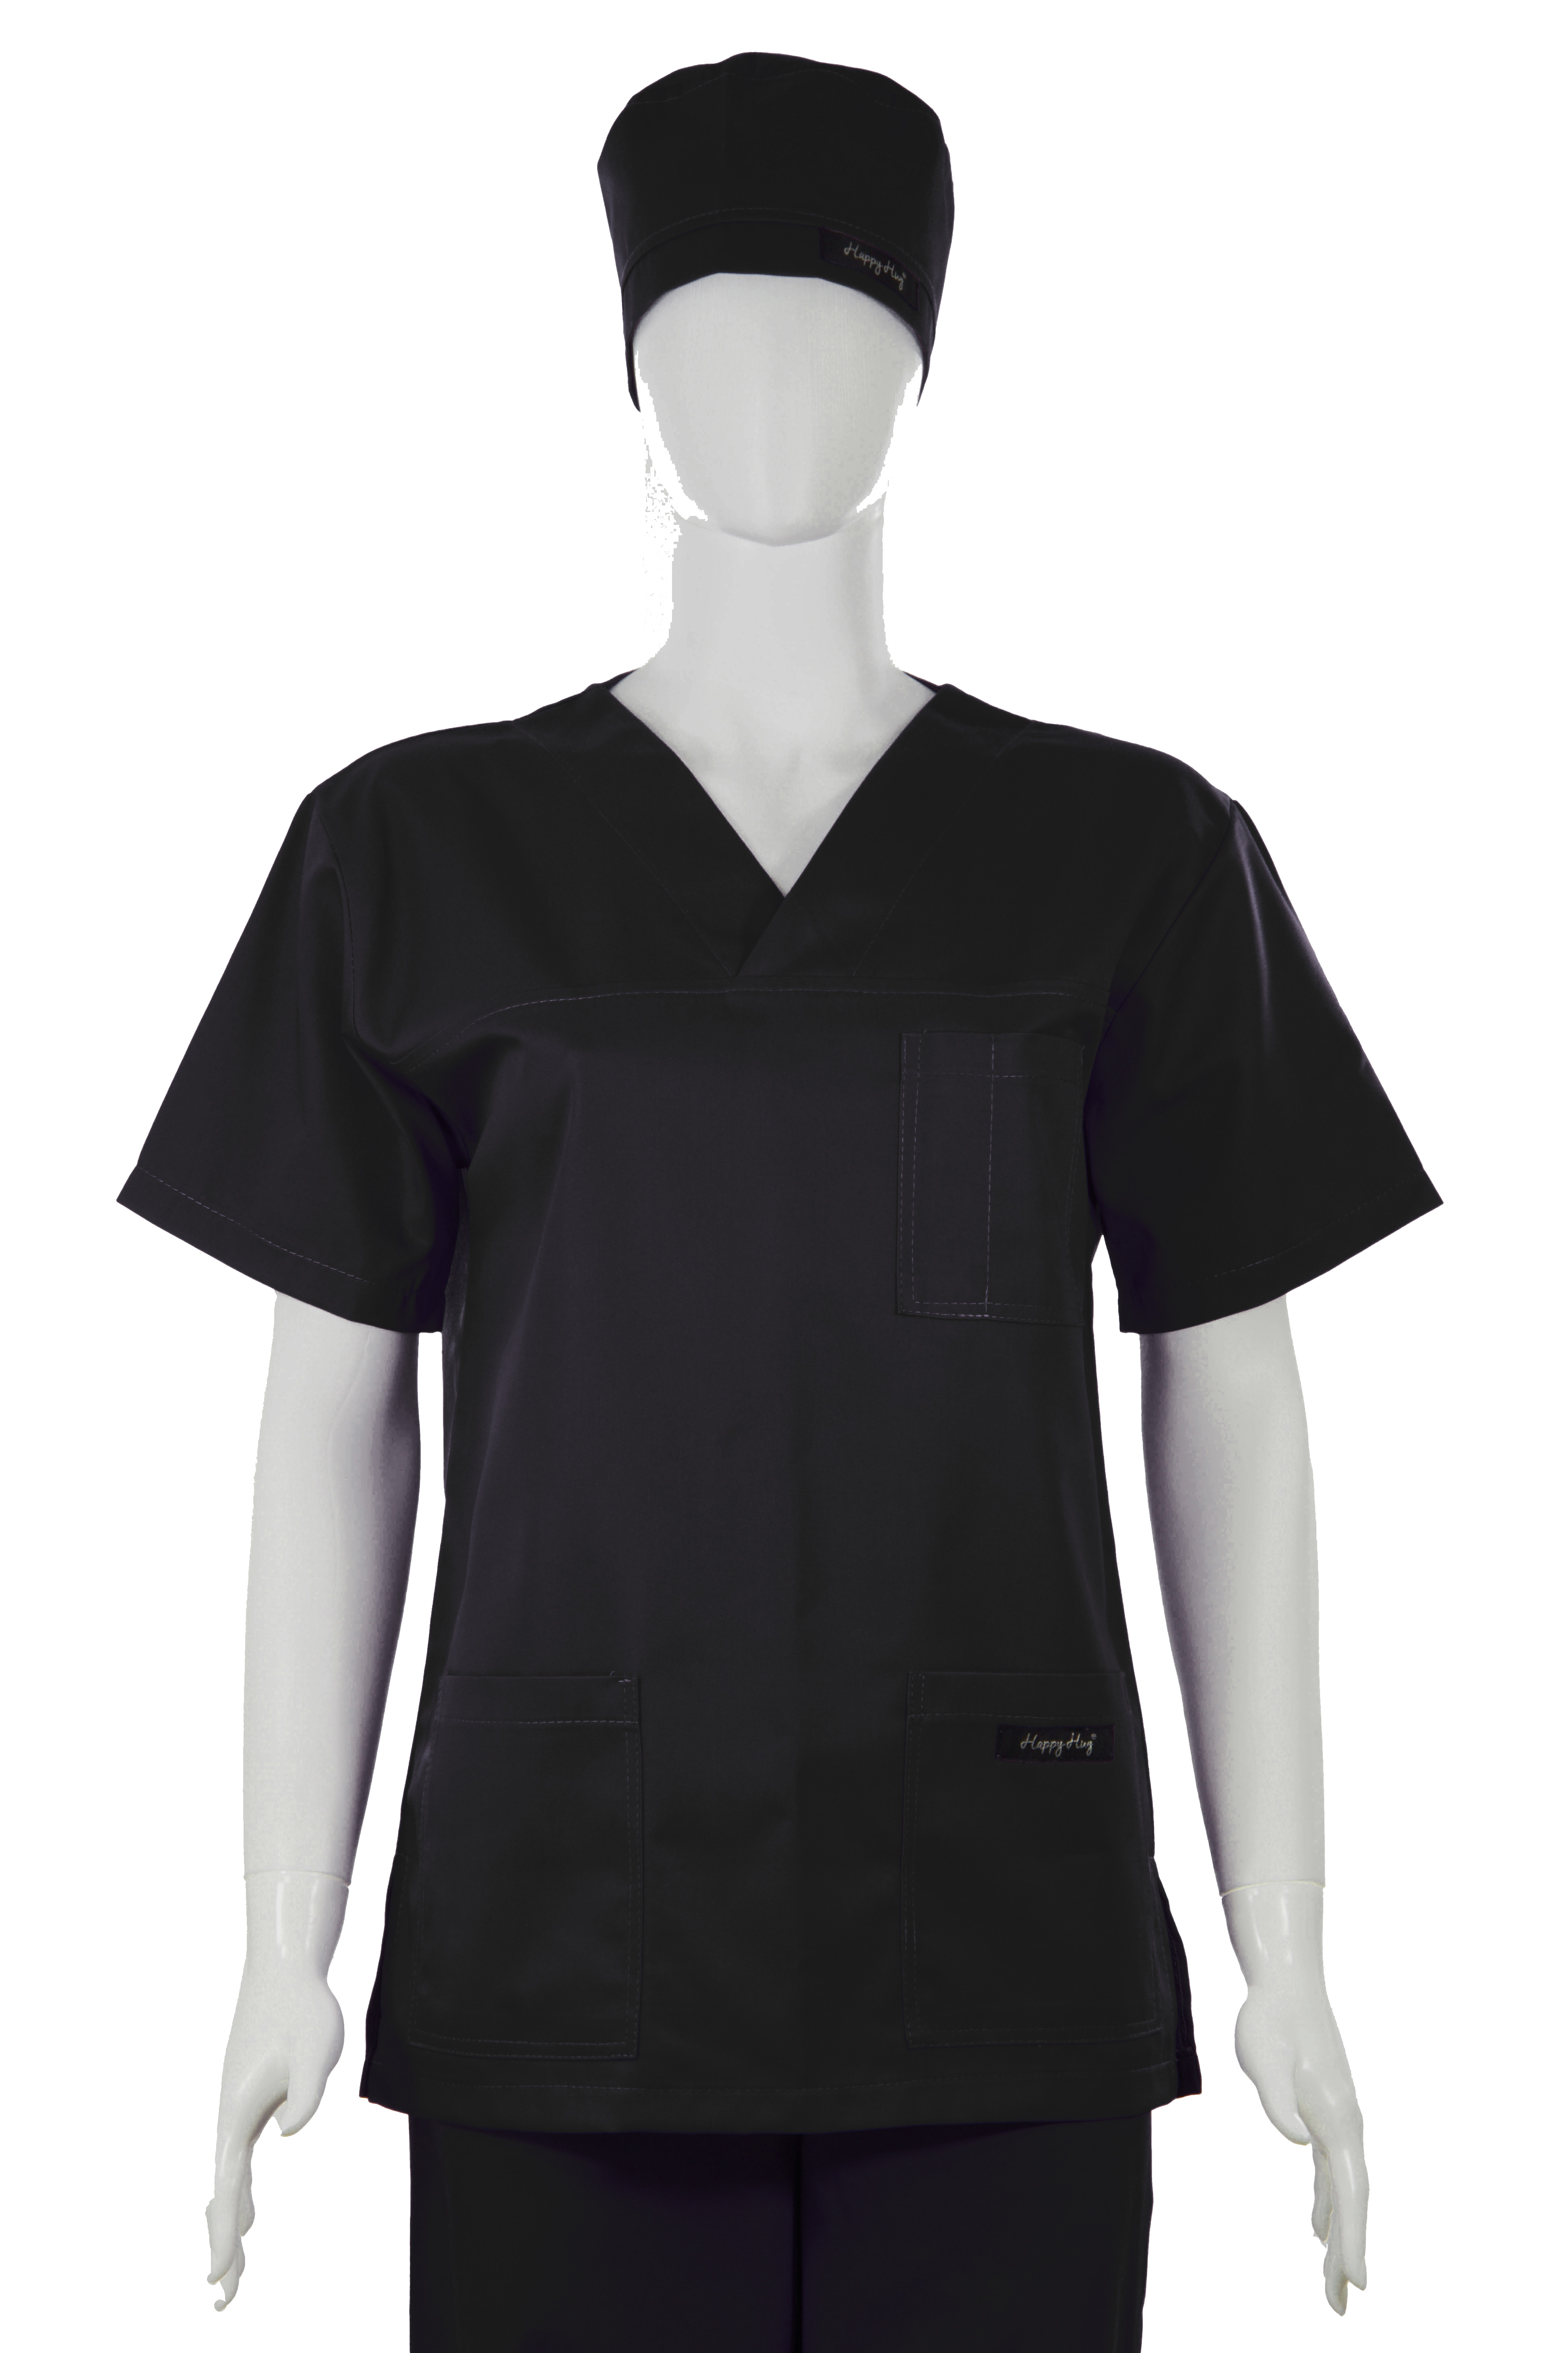 Costum Medical Unisex negru [0]